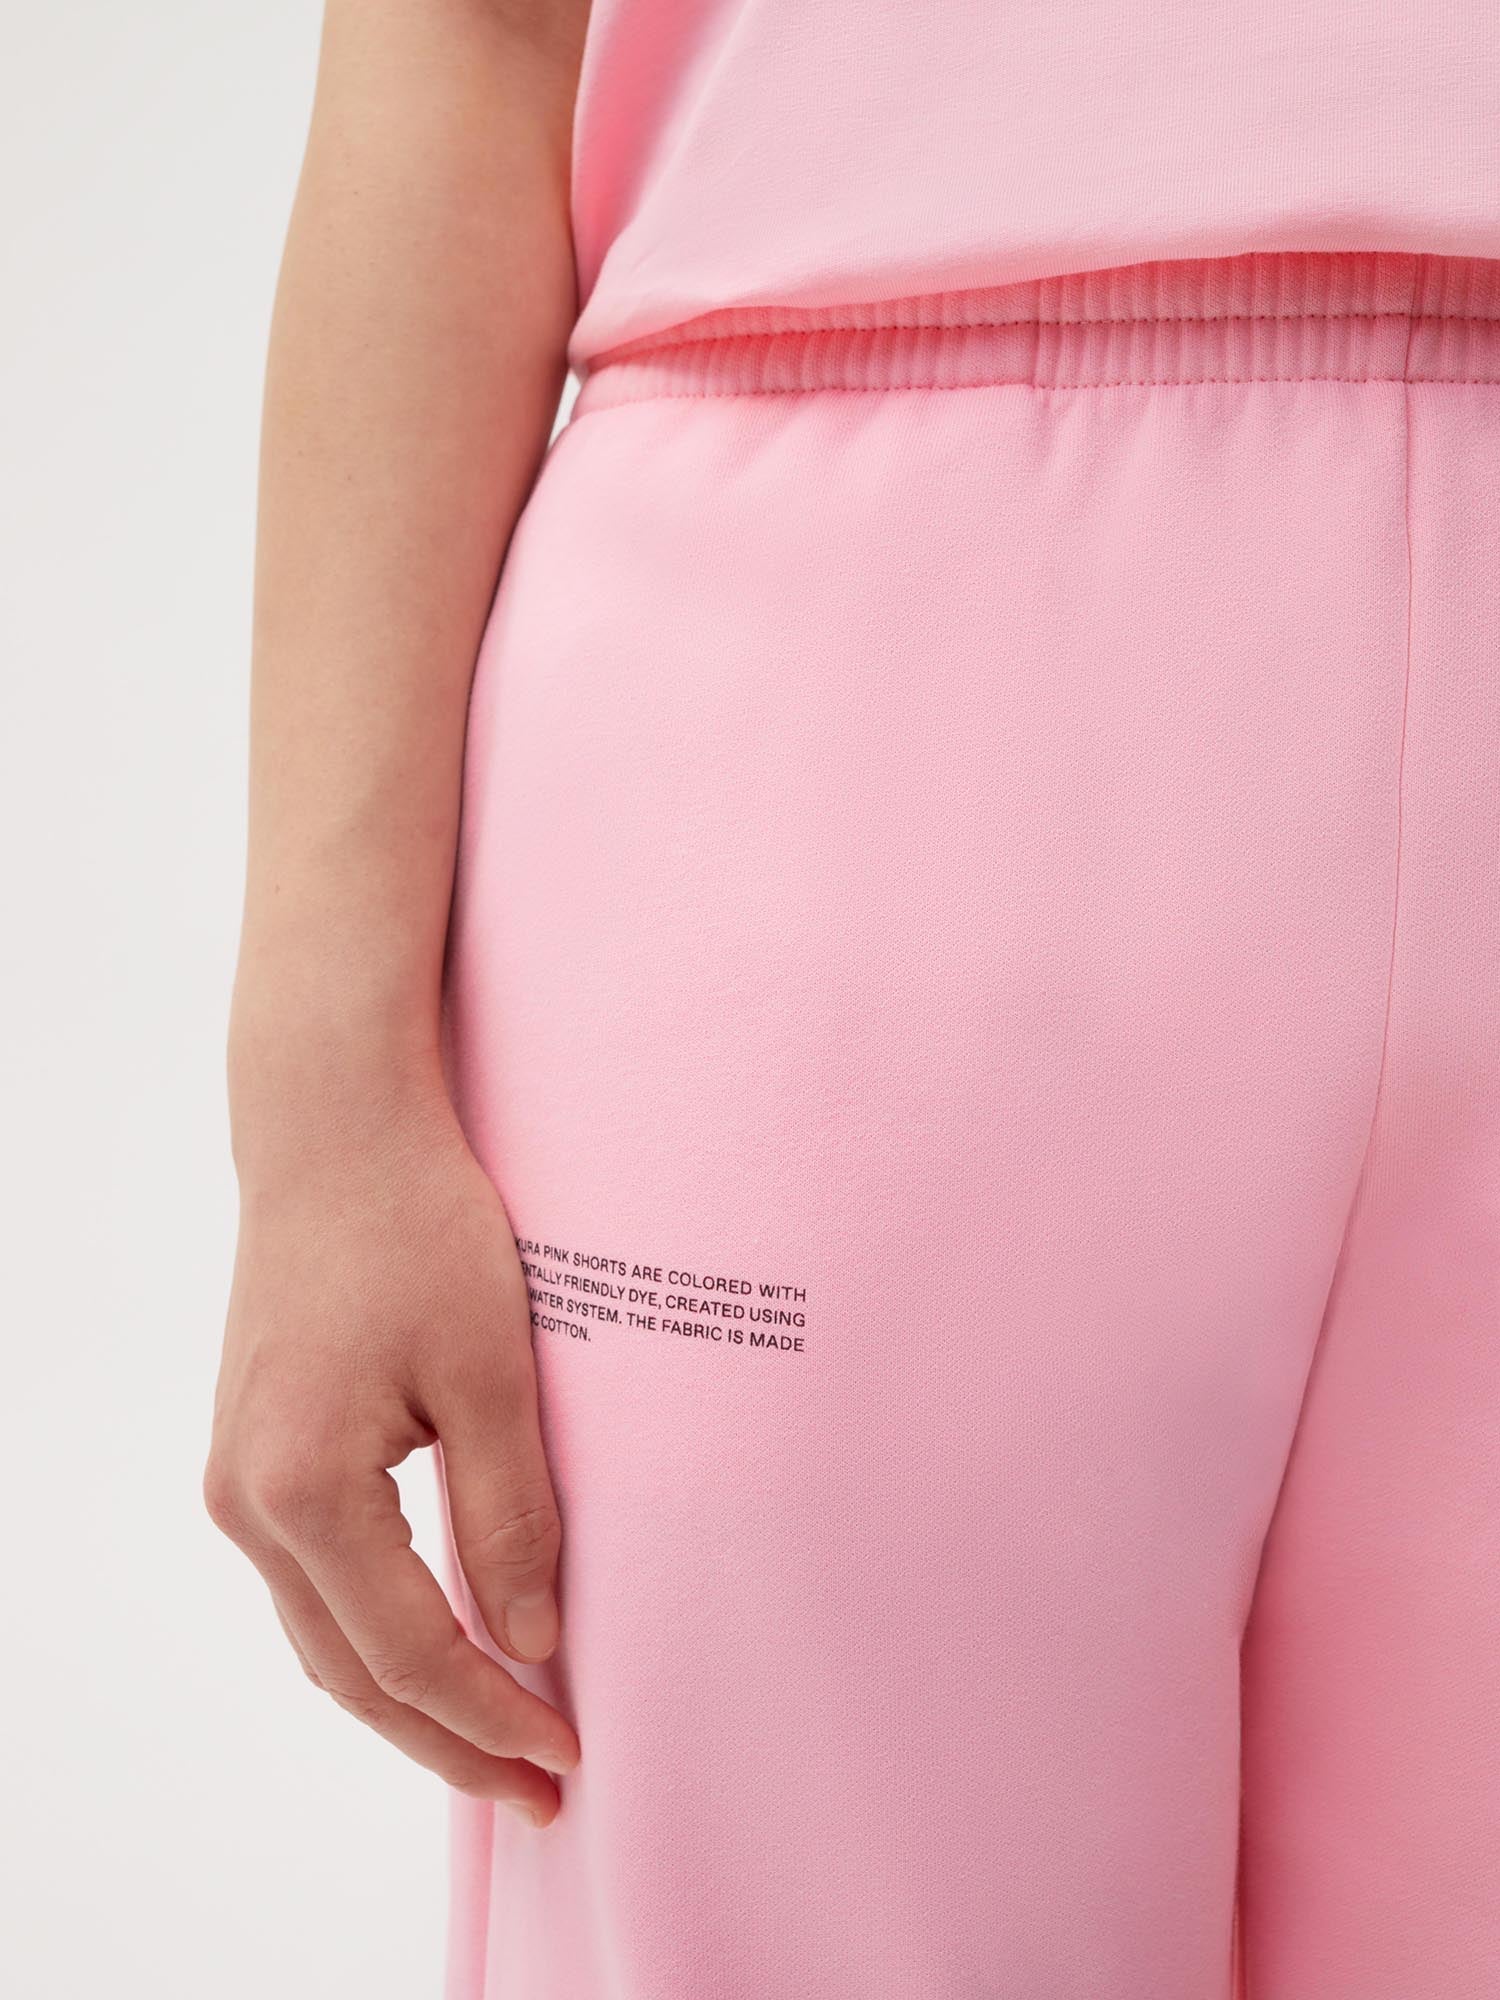 Pink Shorts Pants 